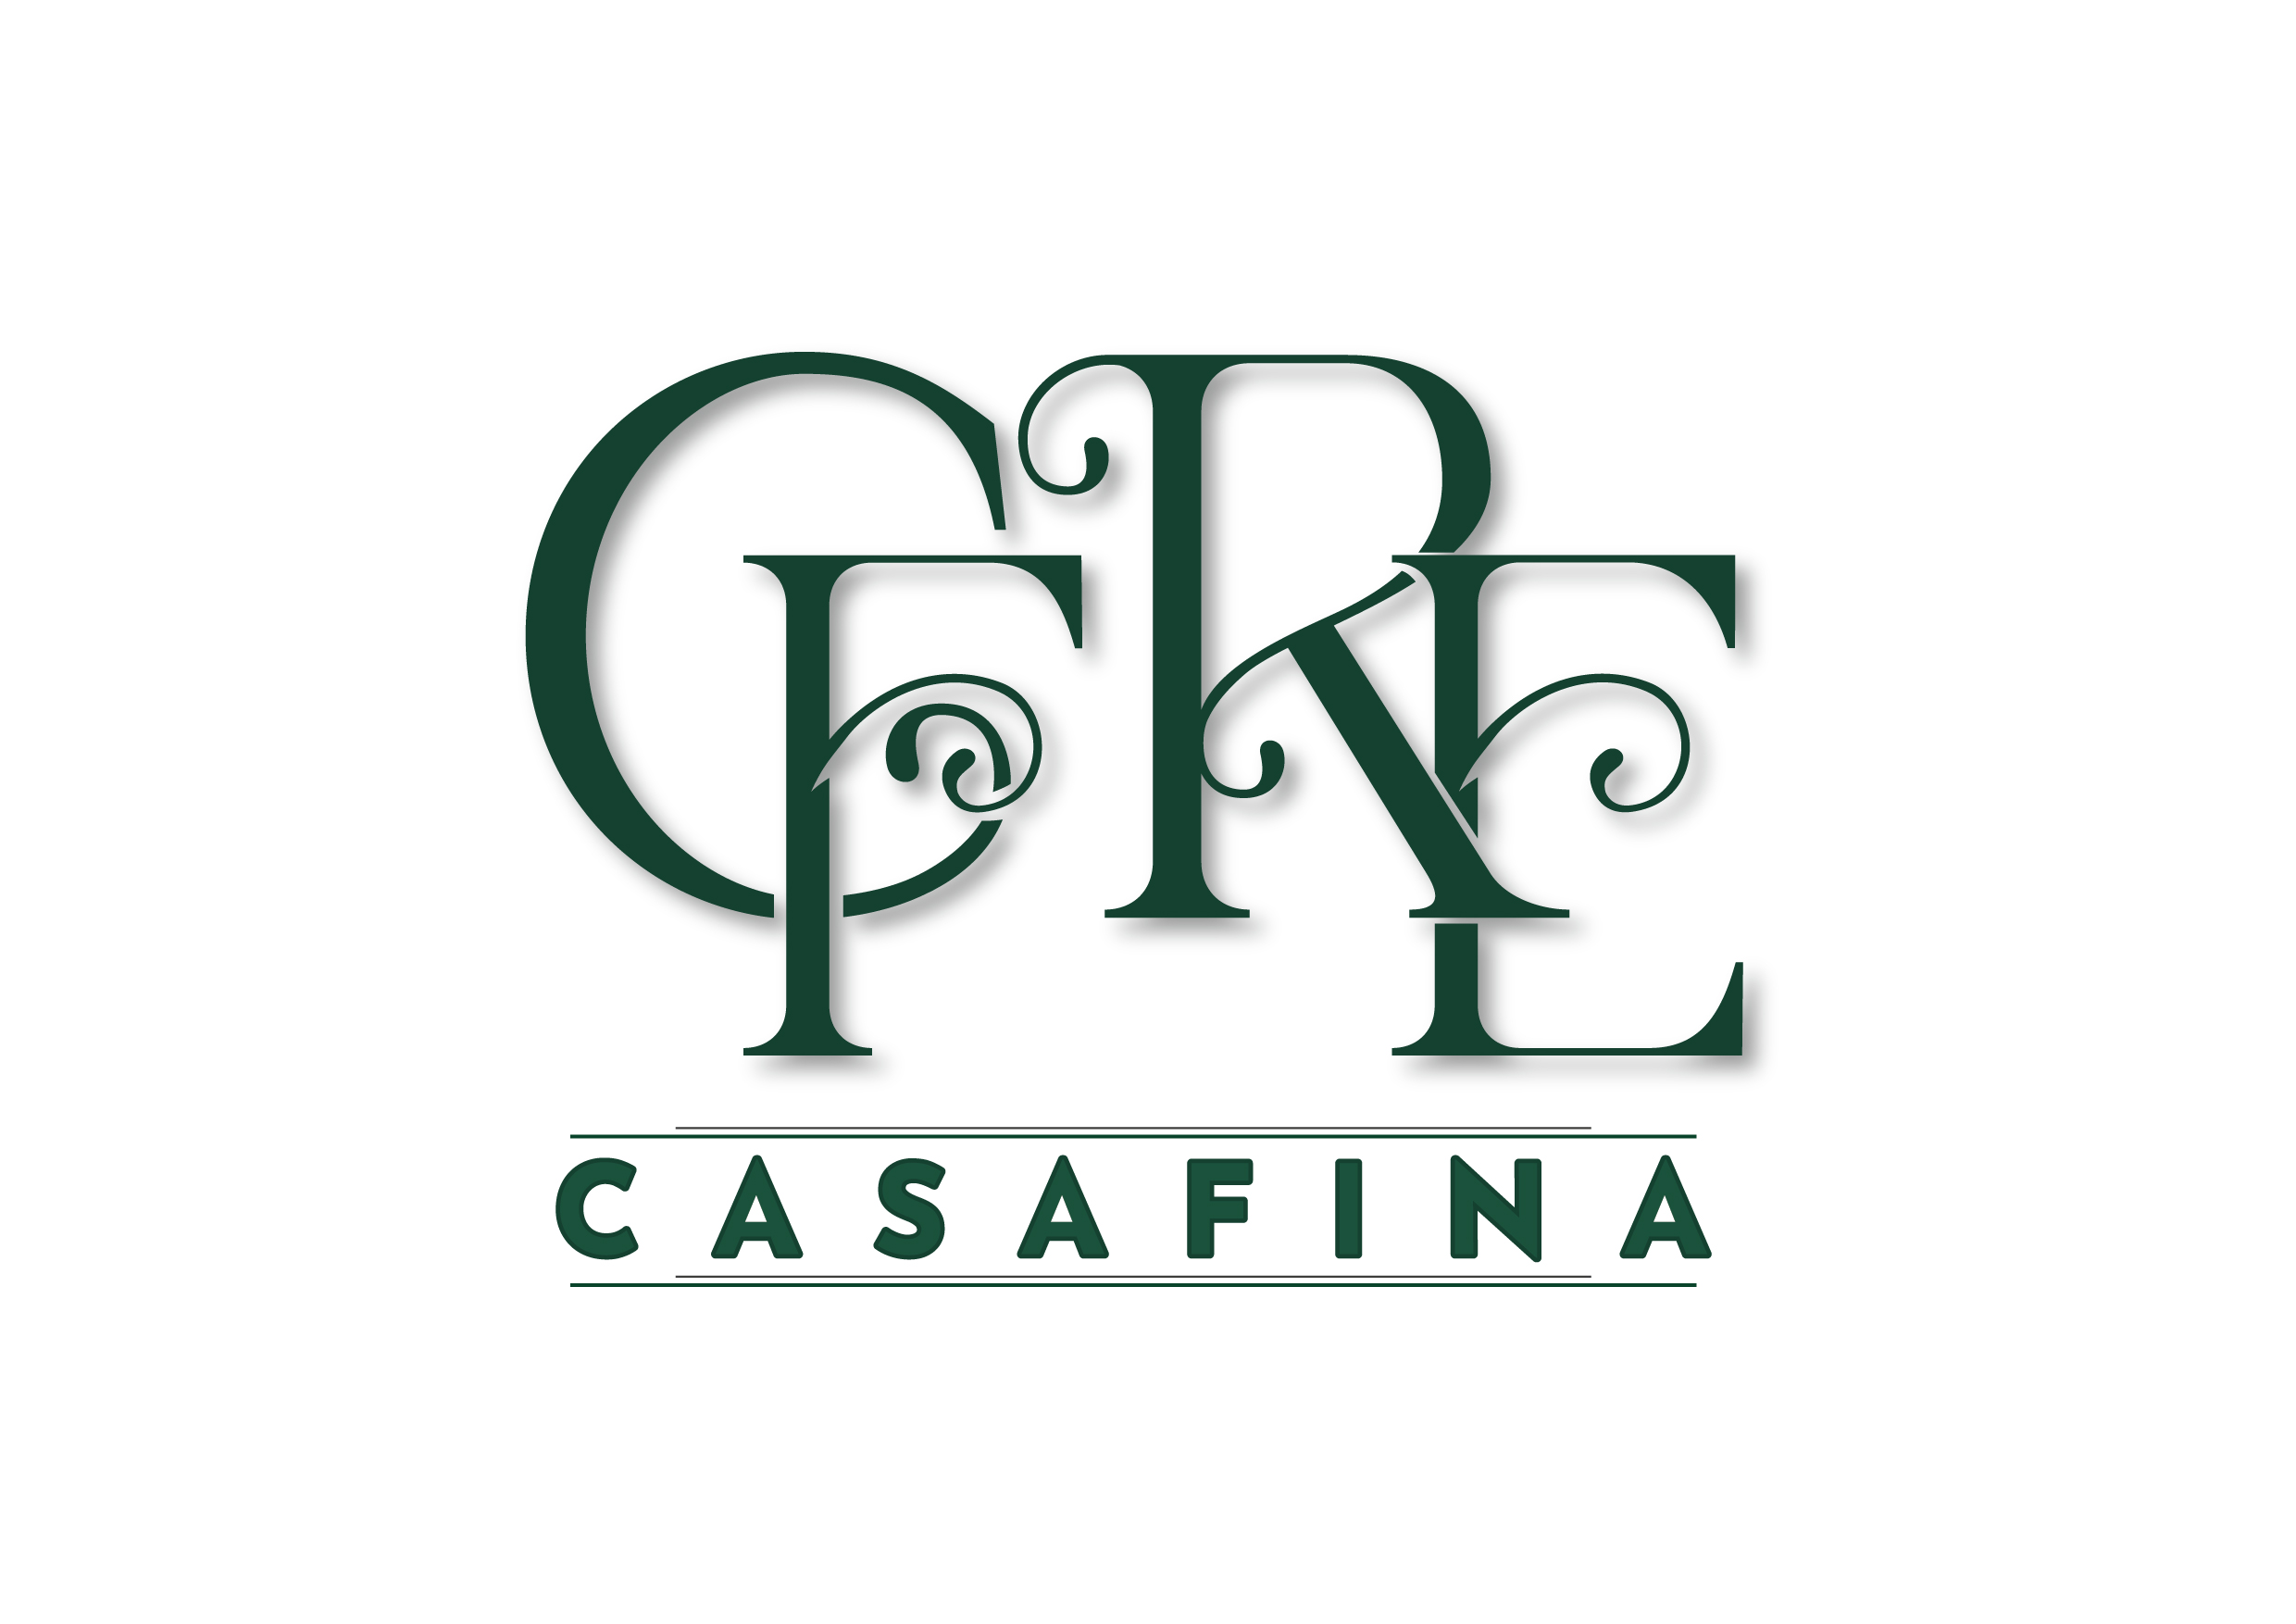 Casafina Real Estate